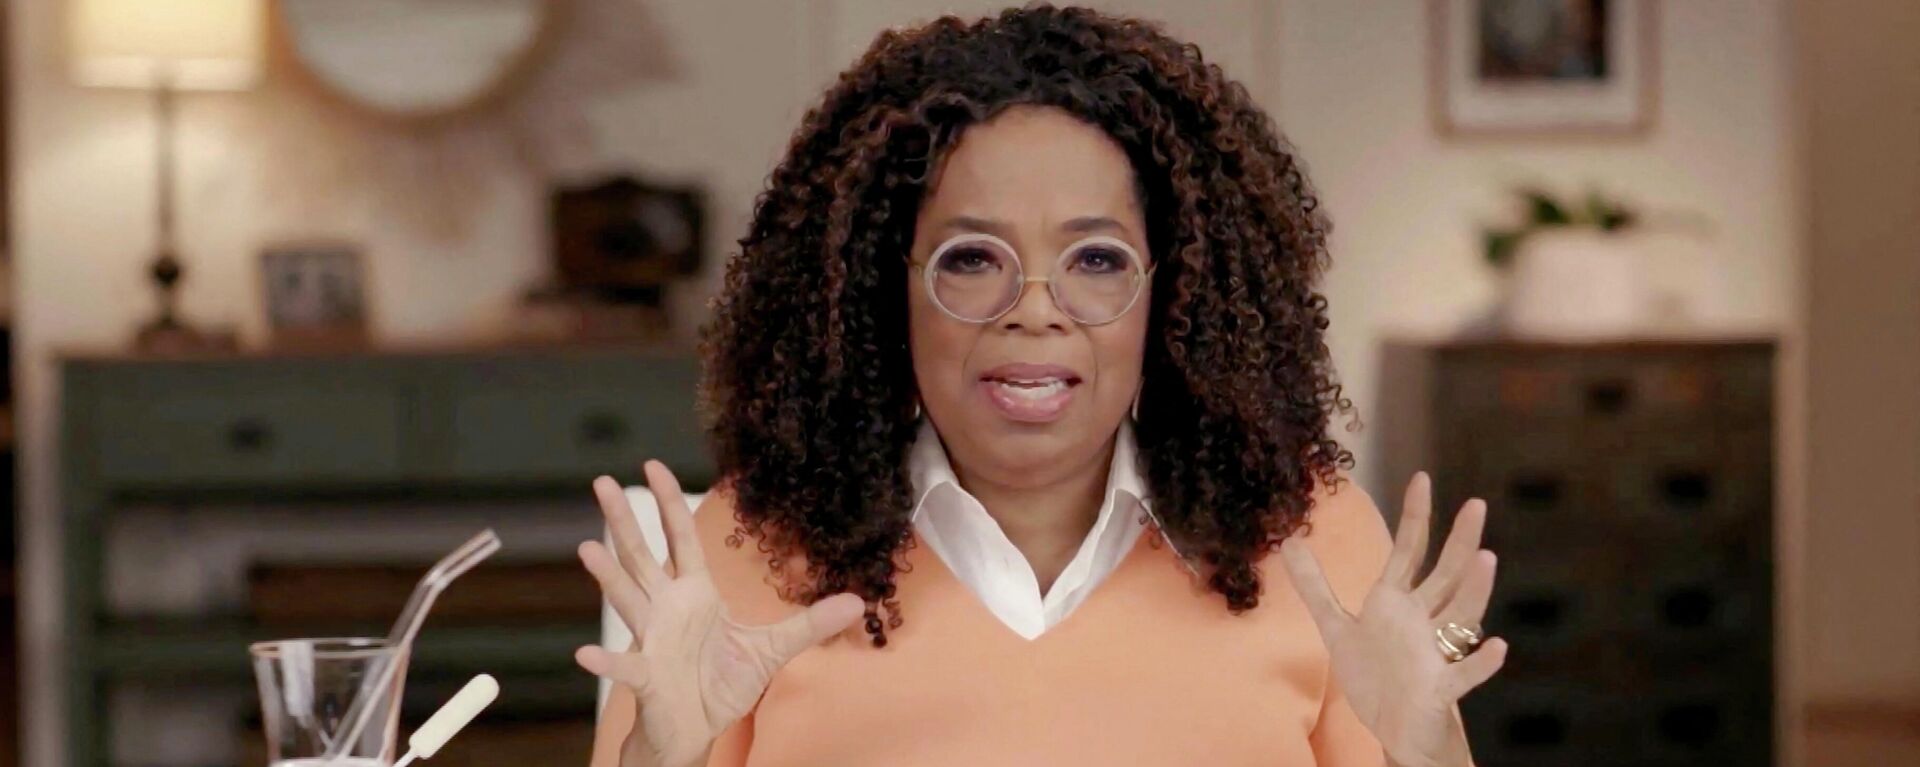 Oprah Winfrey, presentadora de televisión estadounidense  - Sputnik Mundo, 1920, 14.06.2021